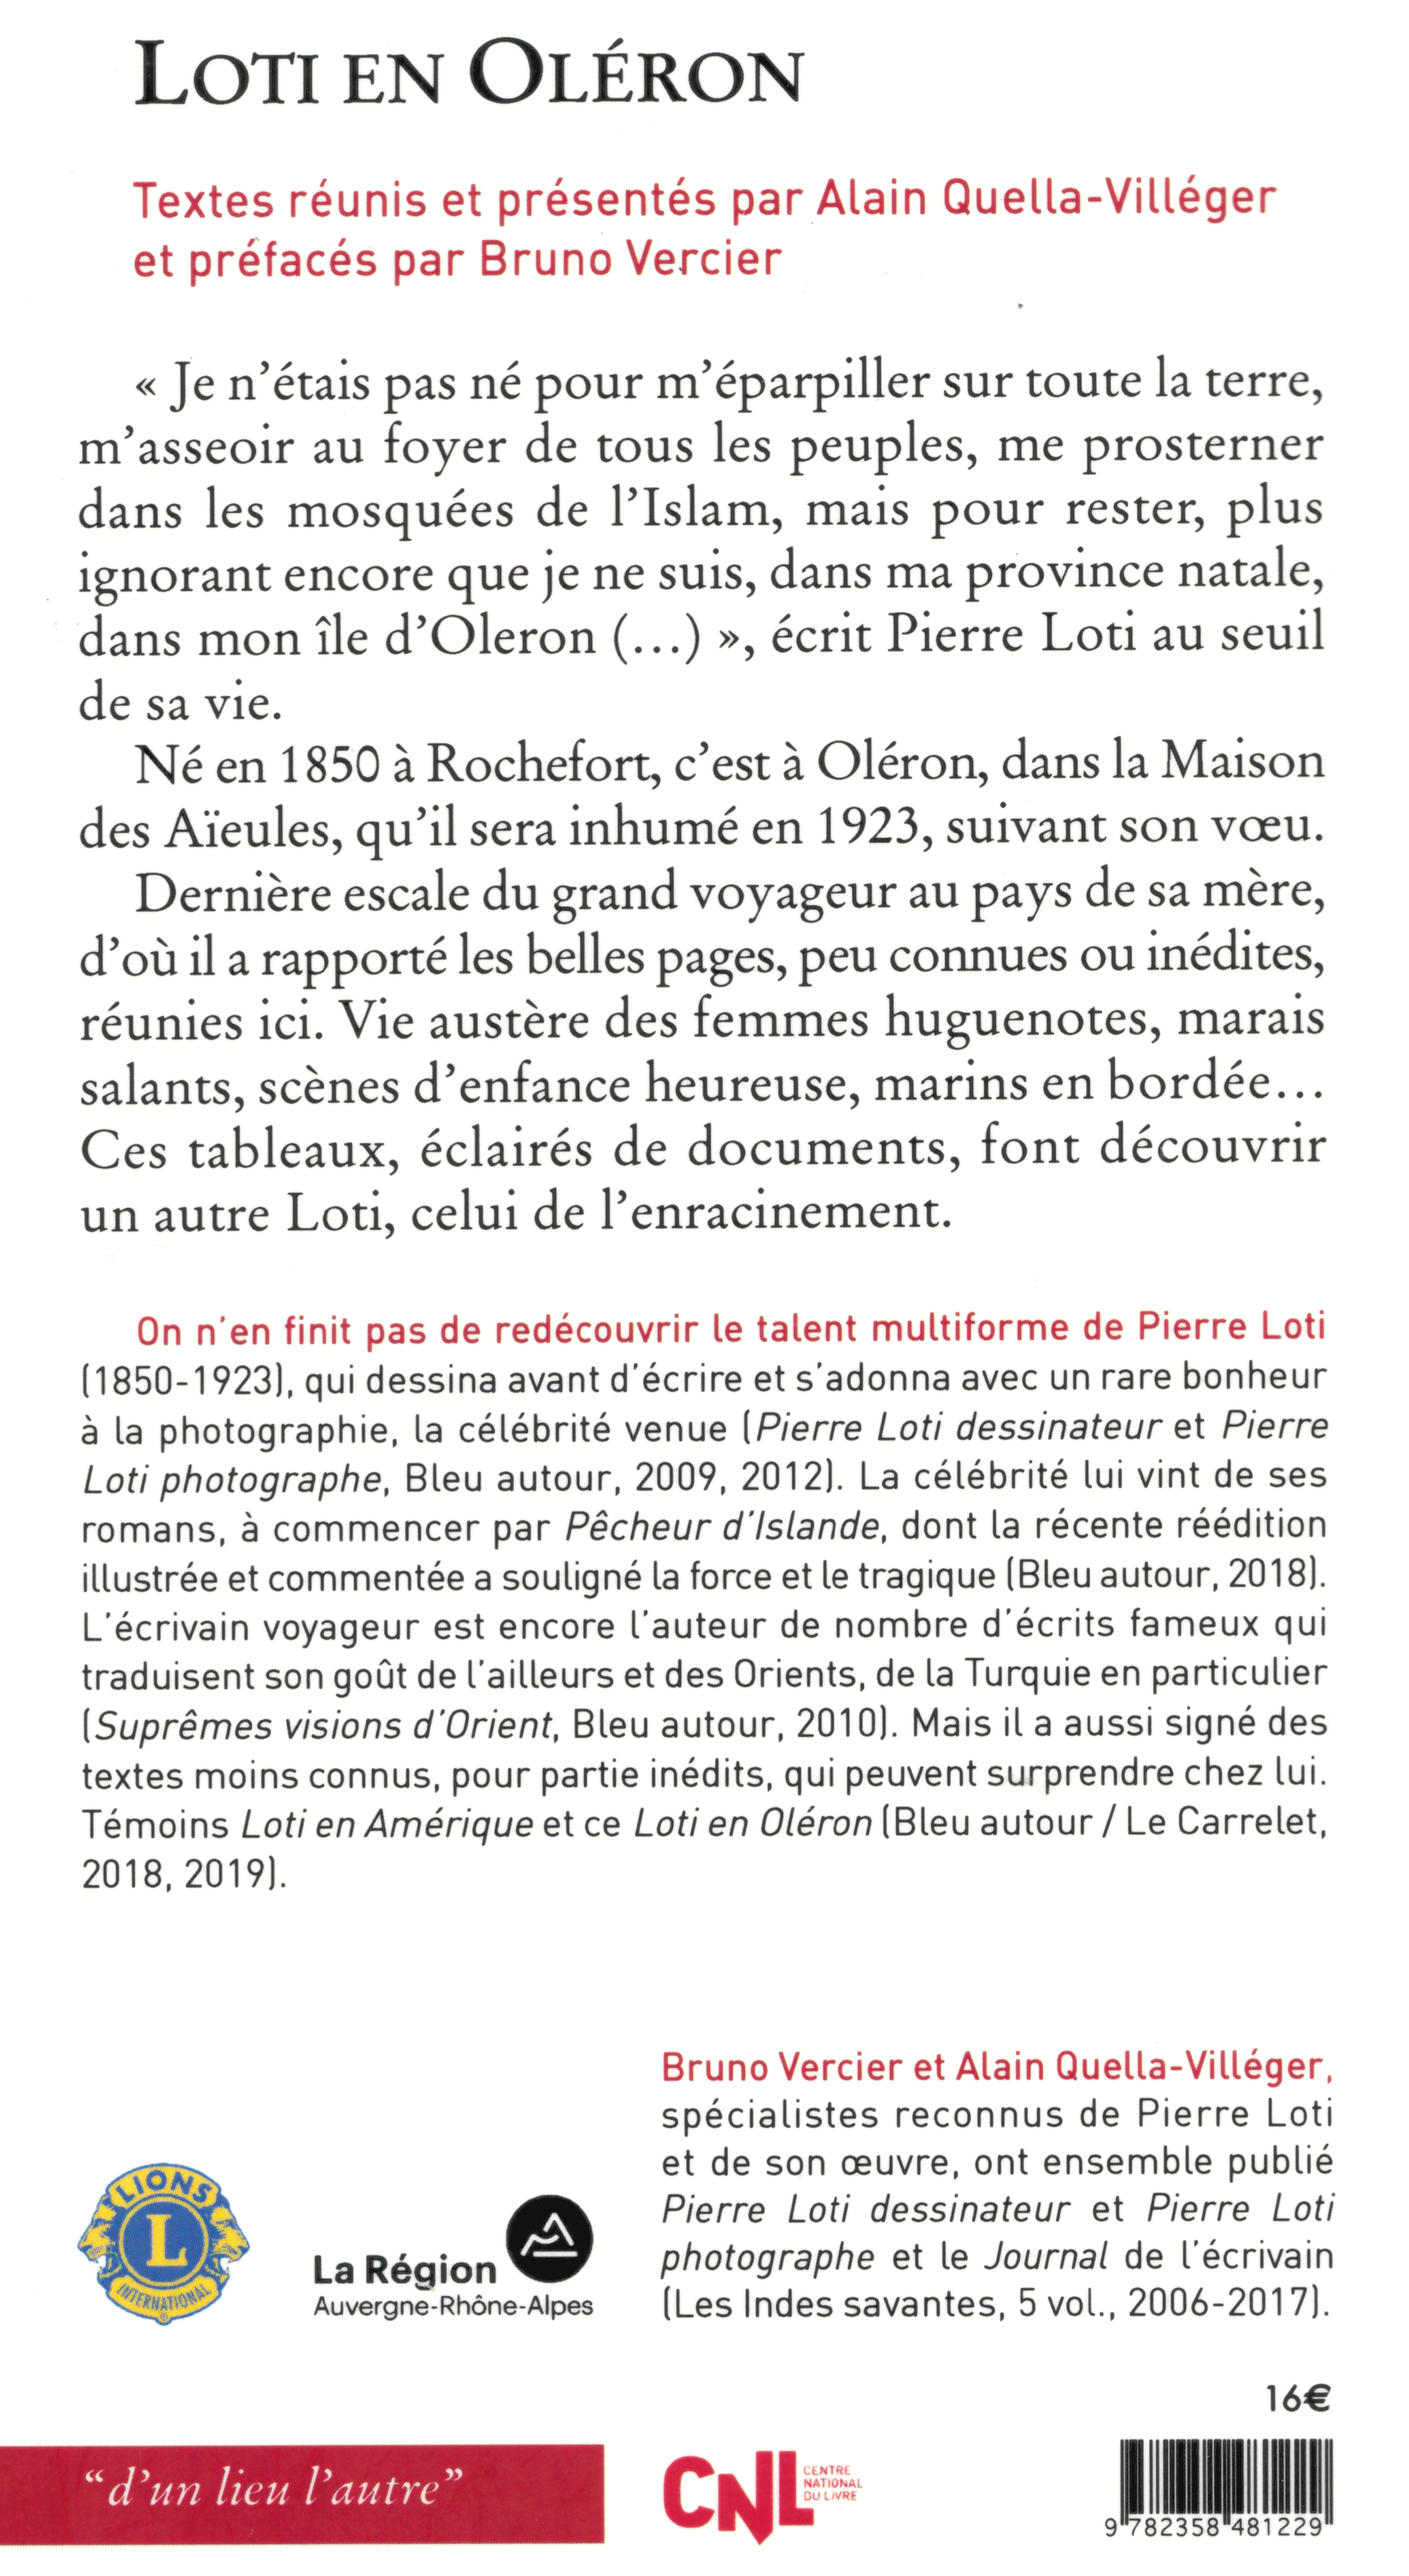 4ième couverture livre Pierre Loti-Oléron AQV